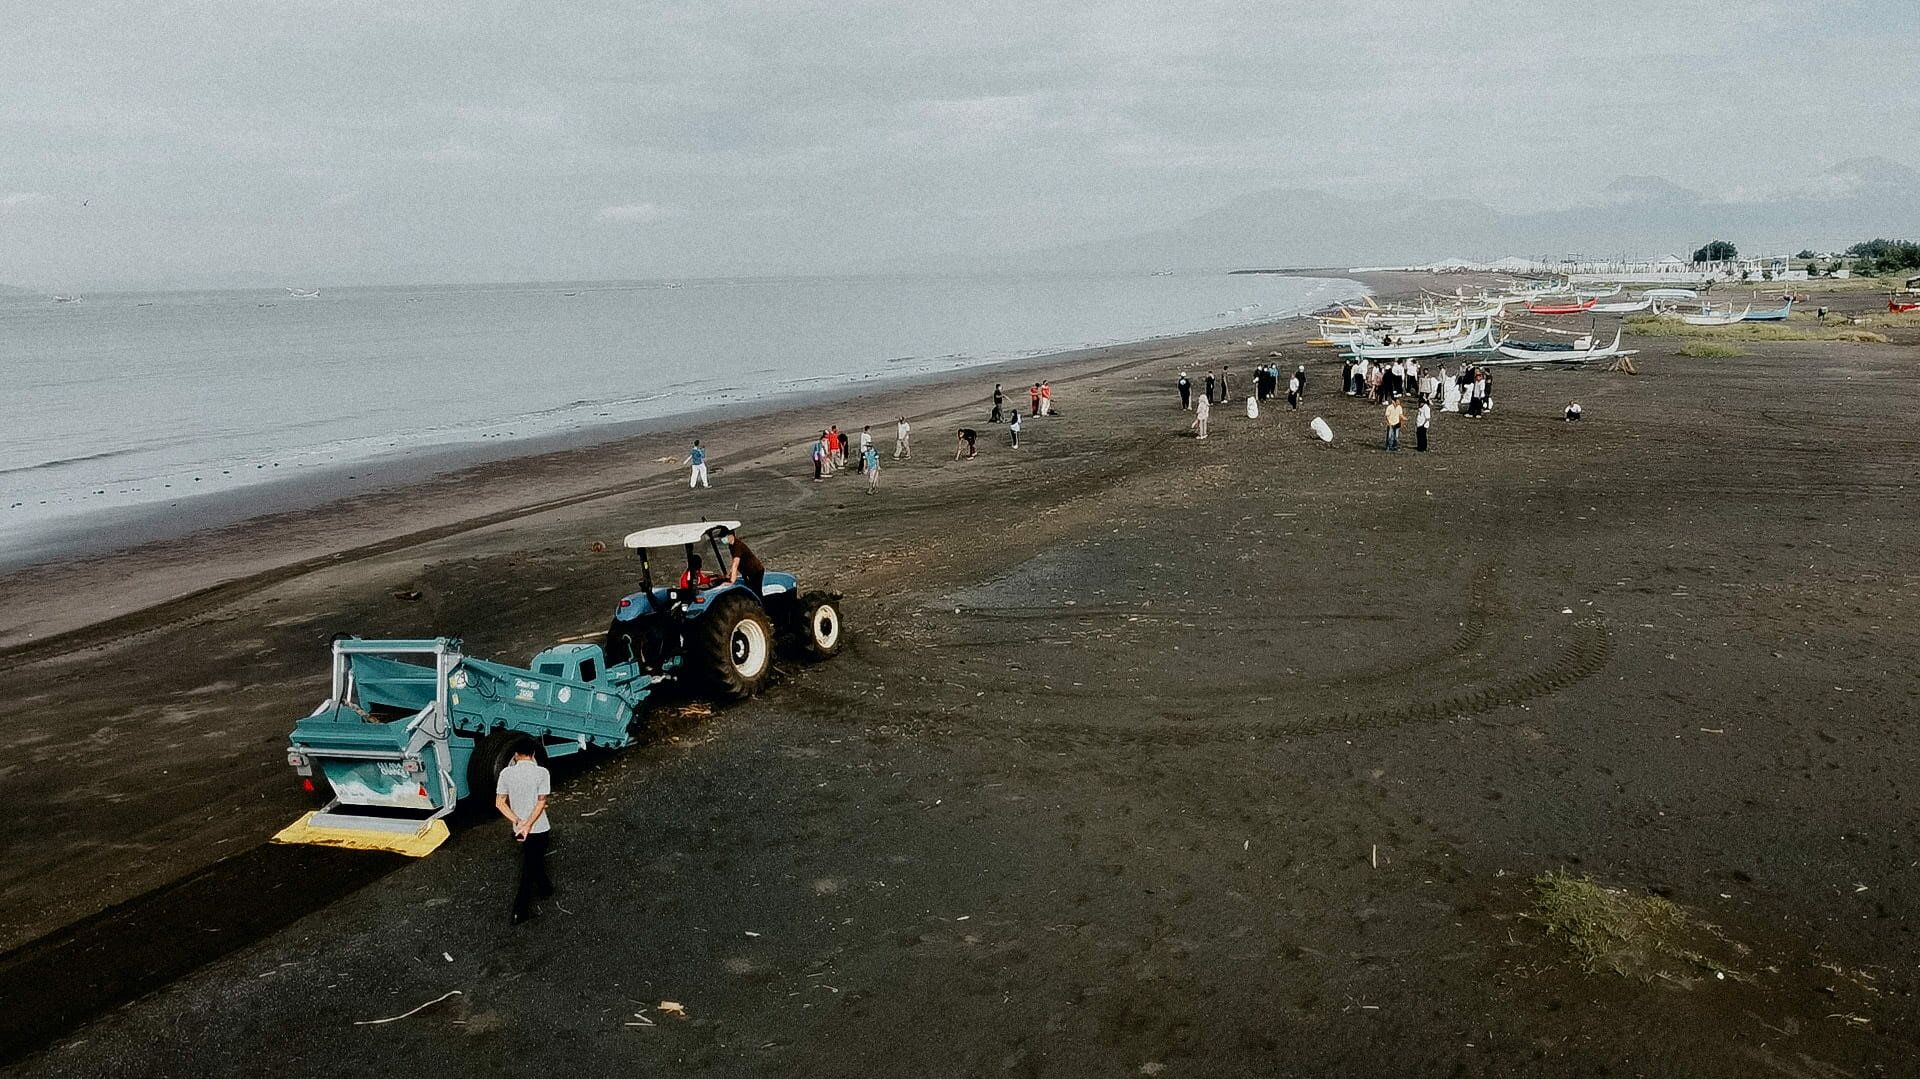 Le BeachTech a apporté son aide, dans le cadre du Projet STOP, lors d'une opération de nettoyage des plages, à Jembrana, sur la côte nord-ouest de Bali.